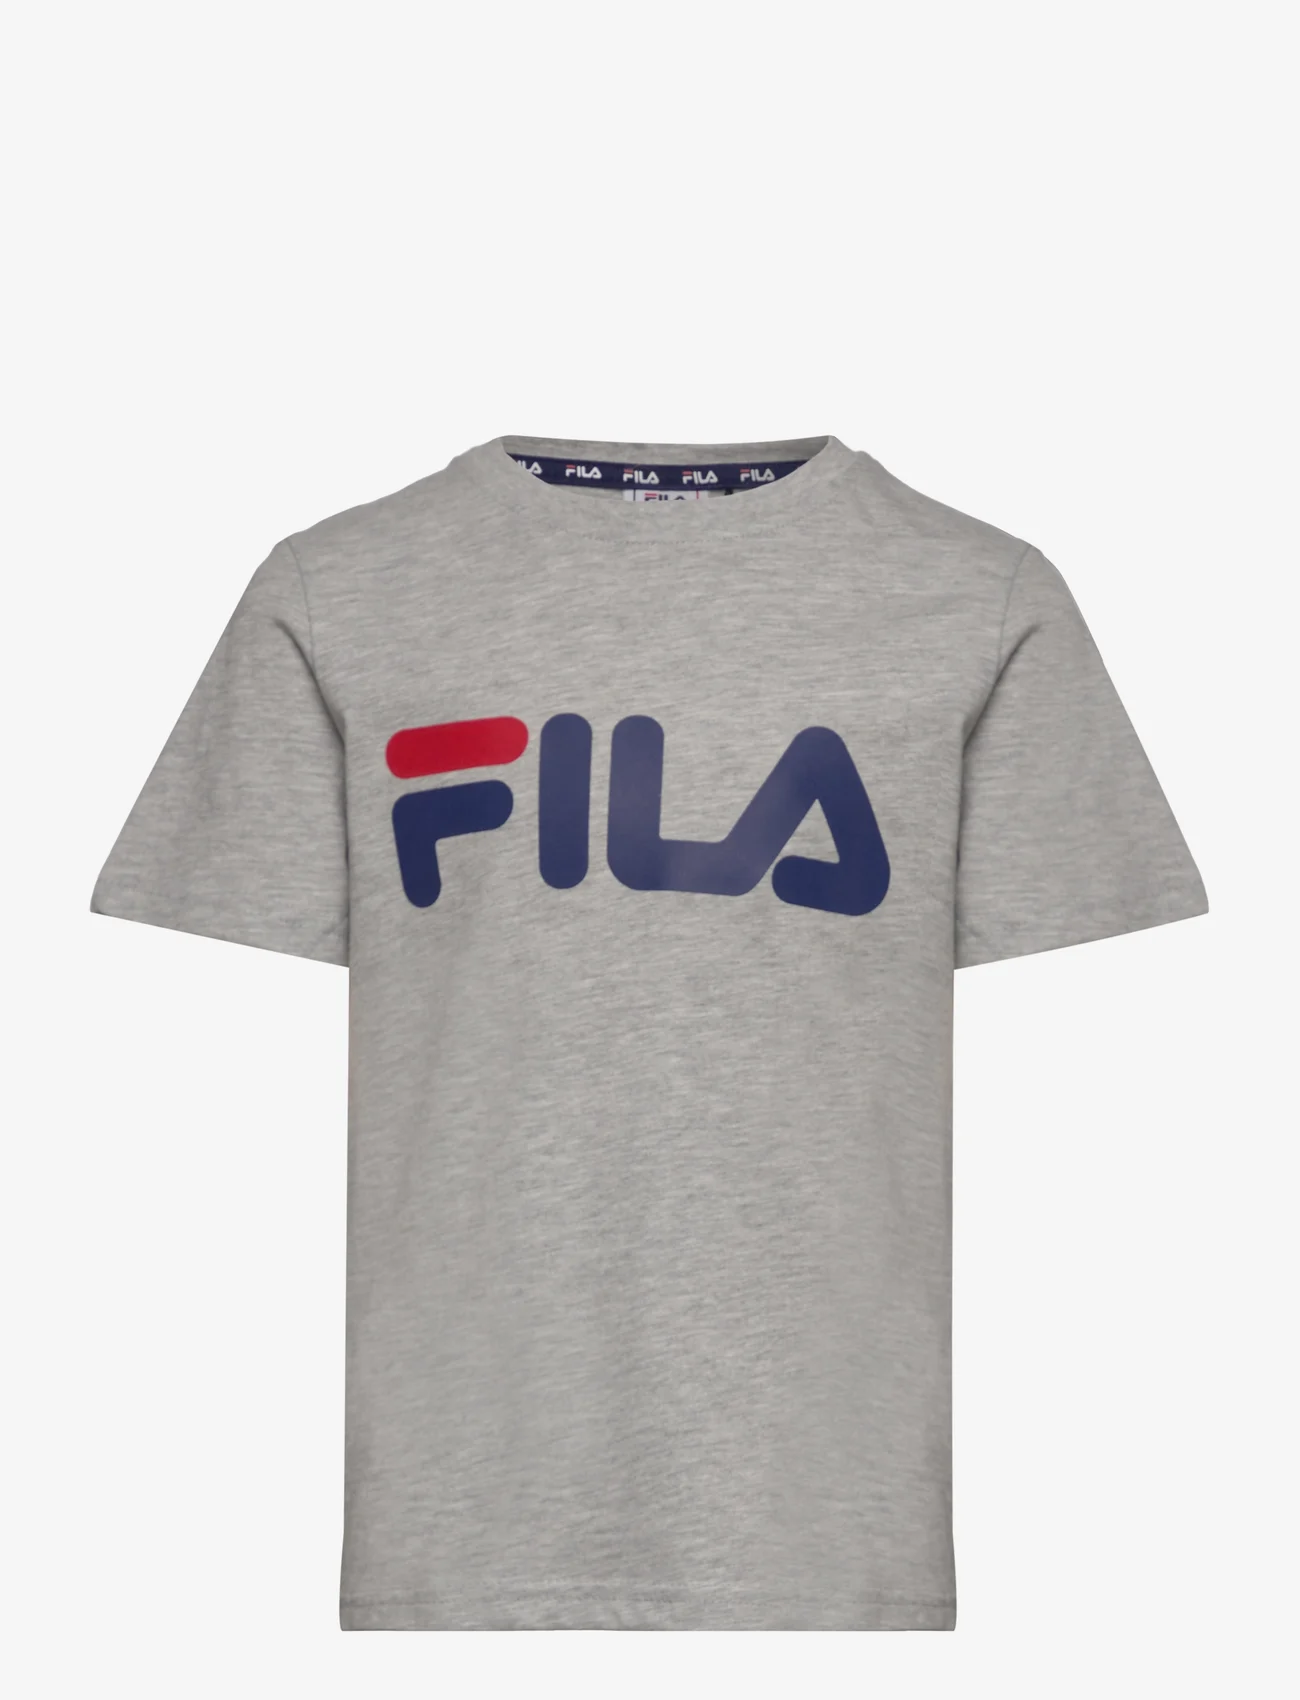 FILA - BAIA MARE classic logo tee - marškinėliai trumpomis rankovėmis - light grey melange - 0